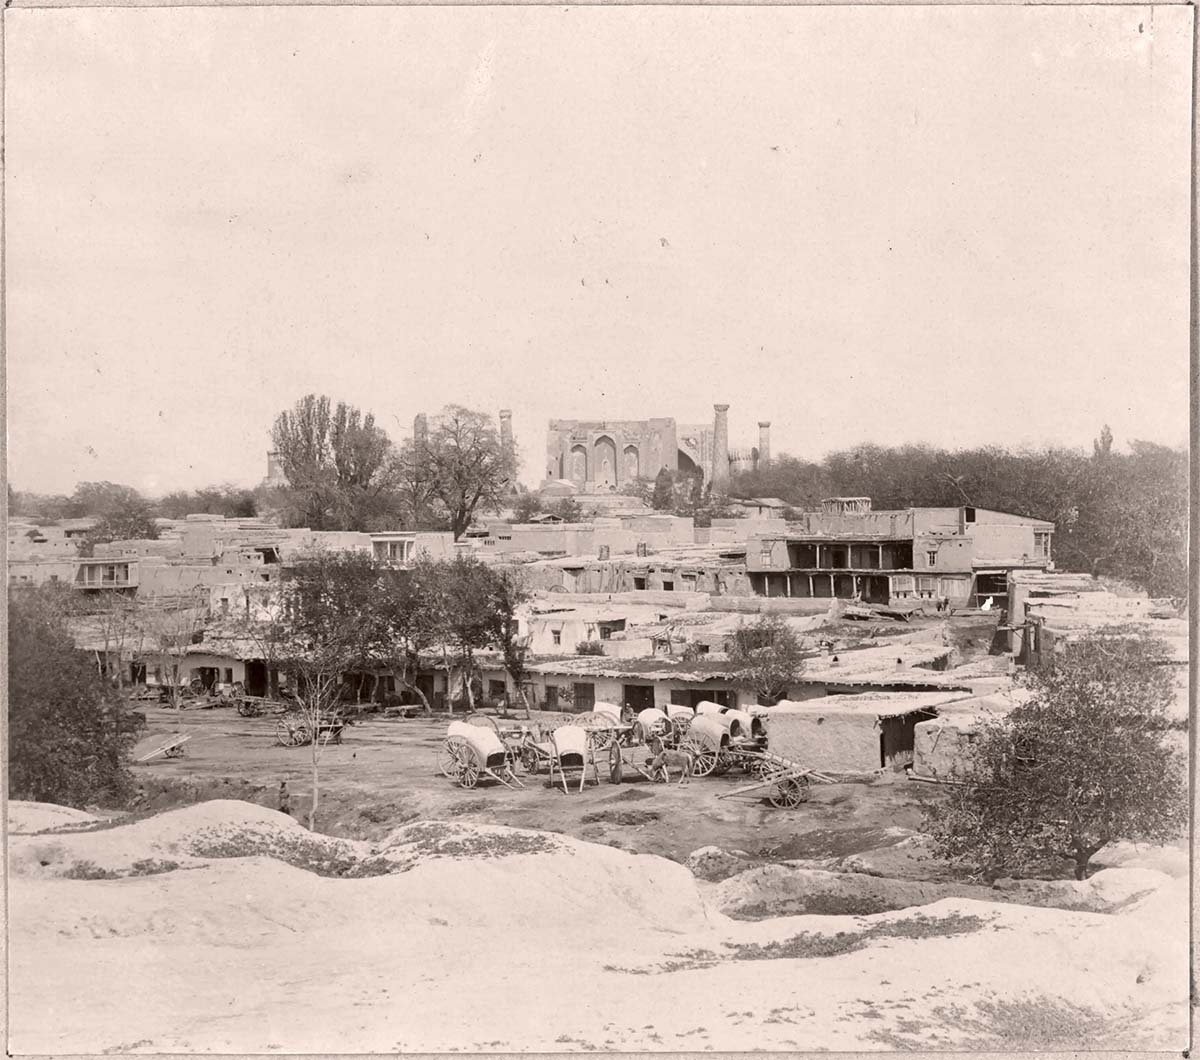 Samarkand. Old town, 1911